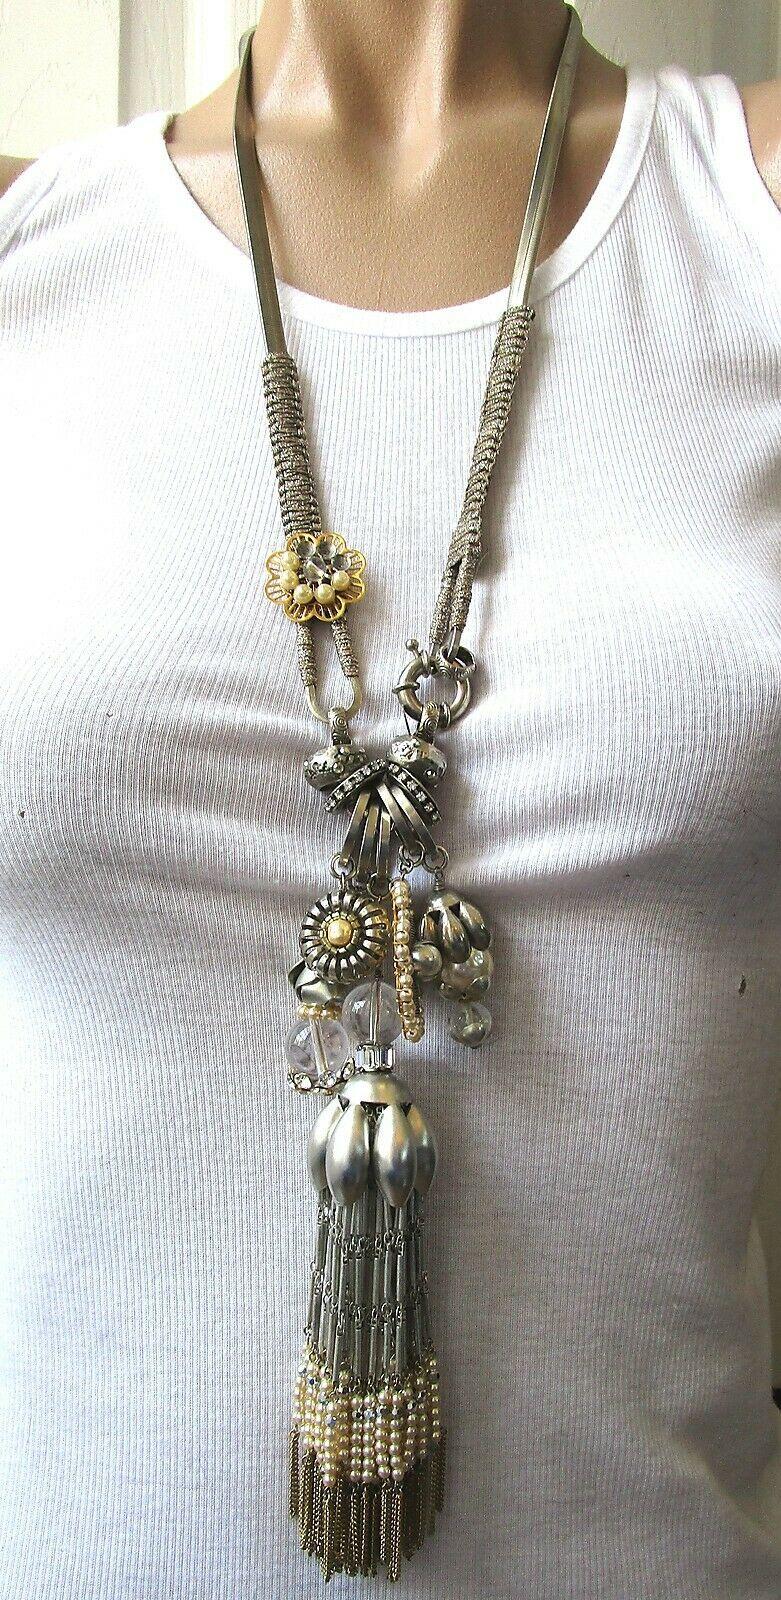 Fabuleux collier de créateur Miriam Haskell comportant des breloques en cristal, des perles et des glands en chaîne. Fermoir à ressort surdimensionné à l'avant ou qui se glisse simplement sur la tête. Le collier mesure environ 28 pouces de long avec